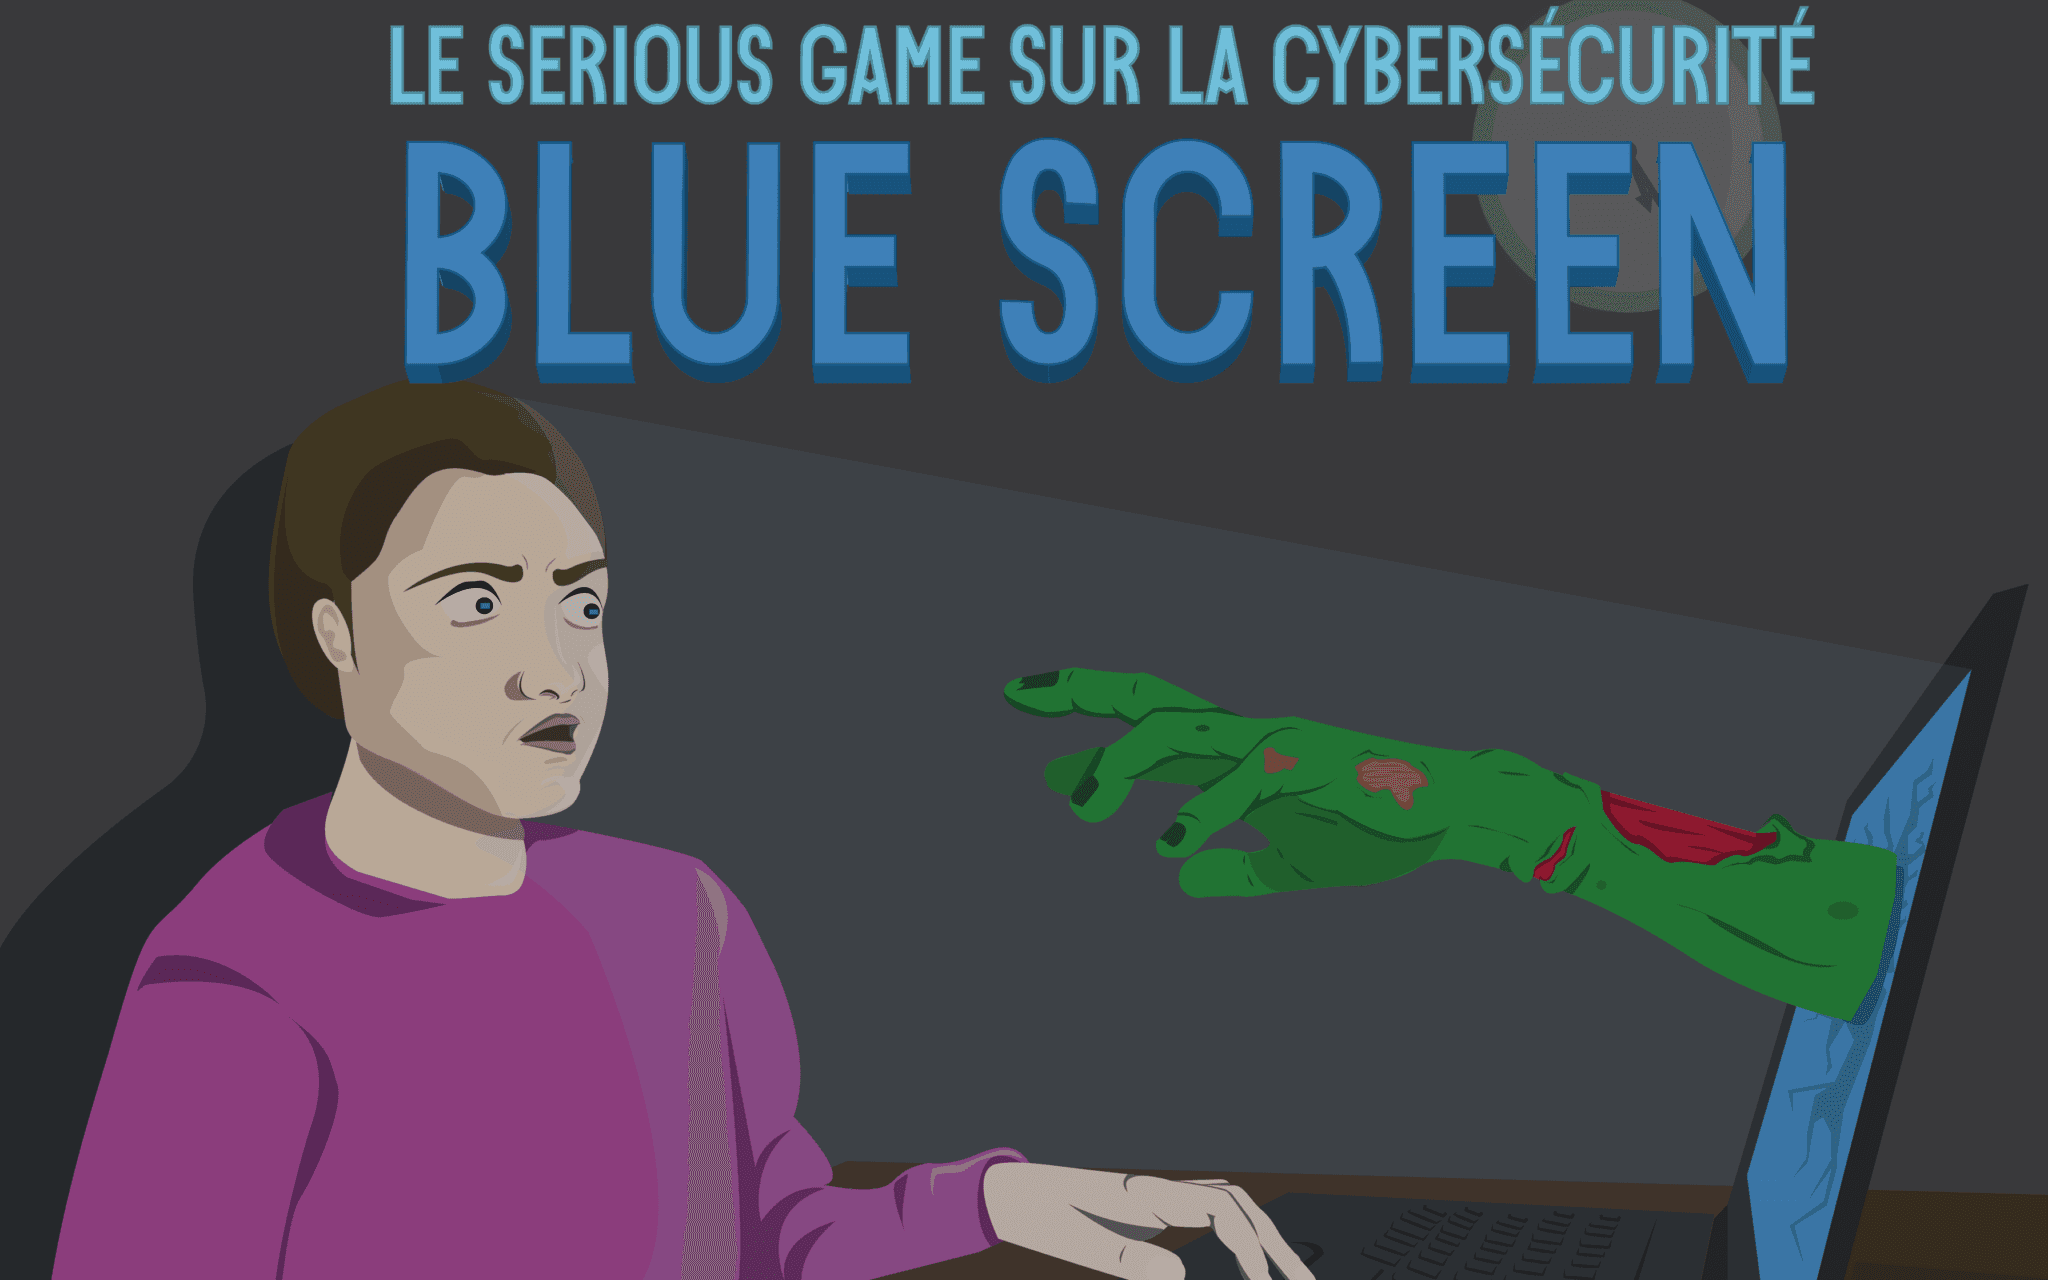 Formation Escape Game "Blue Screen" : un jeu éducatif et collaboratif sur la cybersécurité (G2)